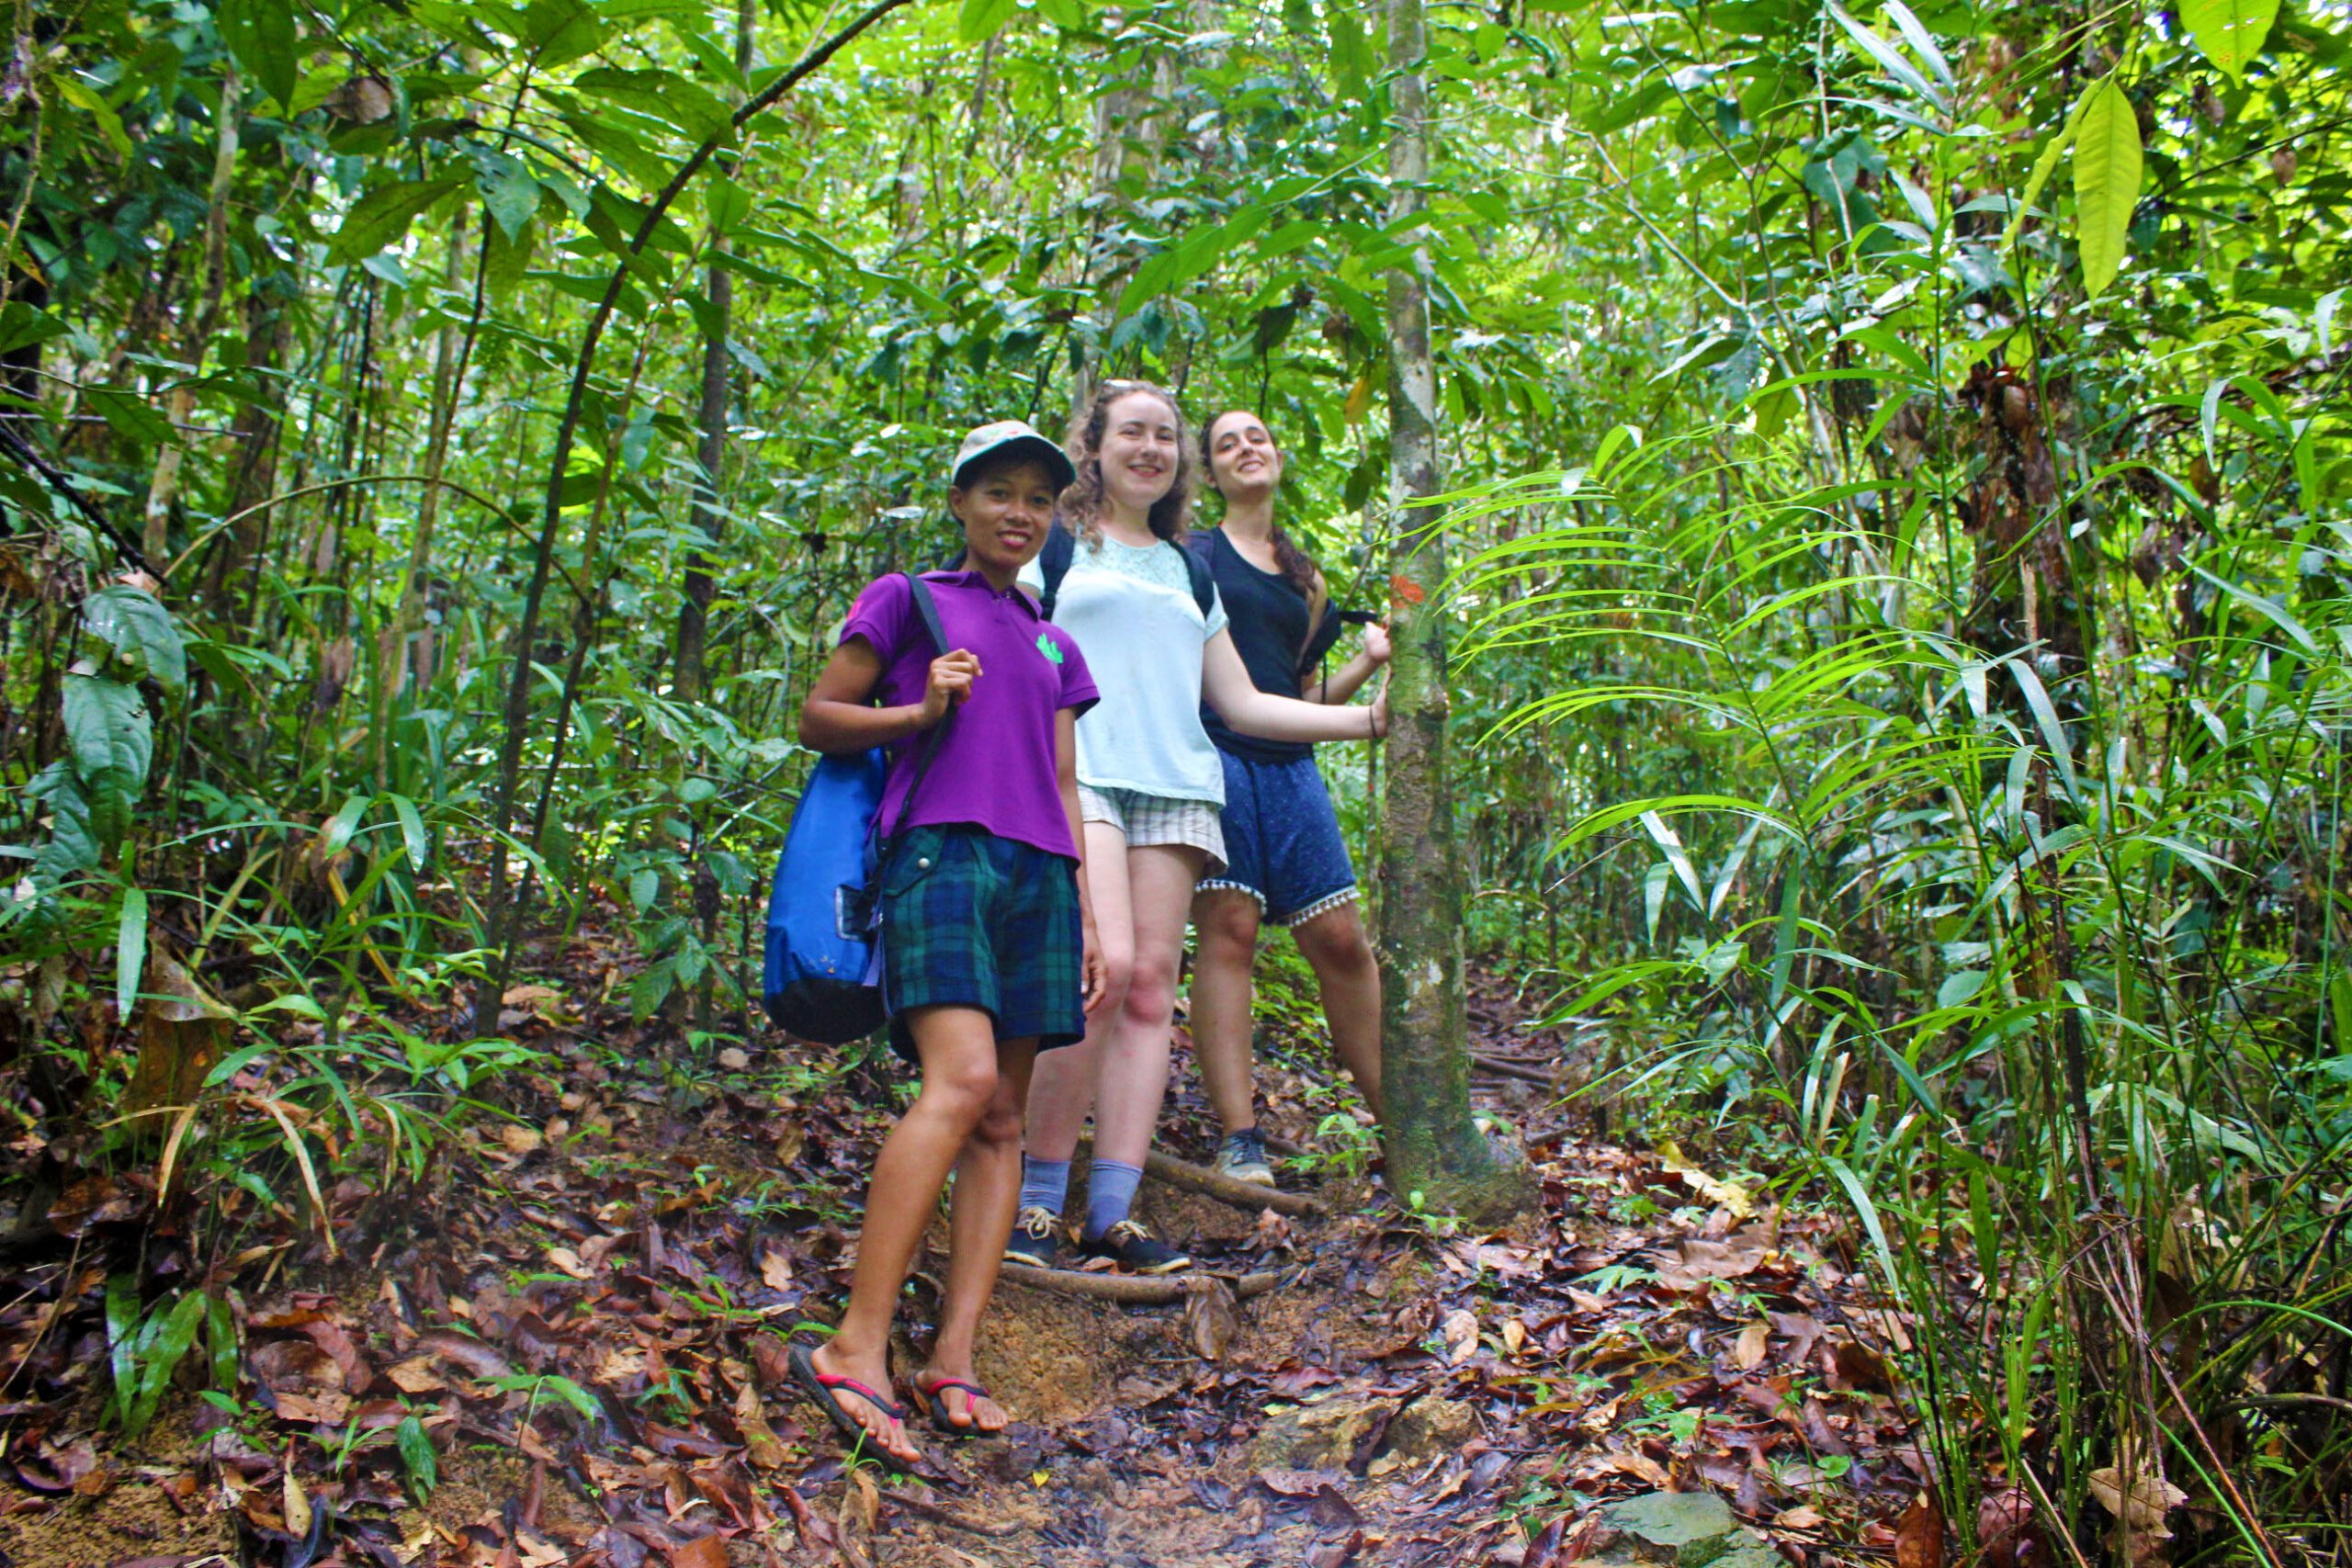 IN PHOTOS: Puerto Princesa’s ‘Jungle Trail’ ecotourism site